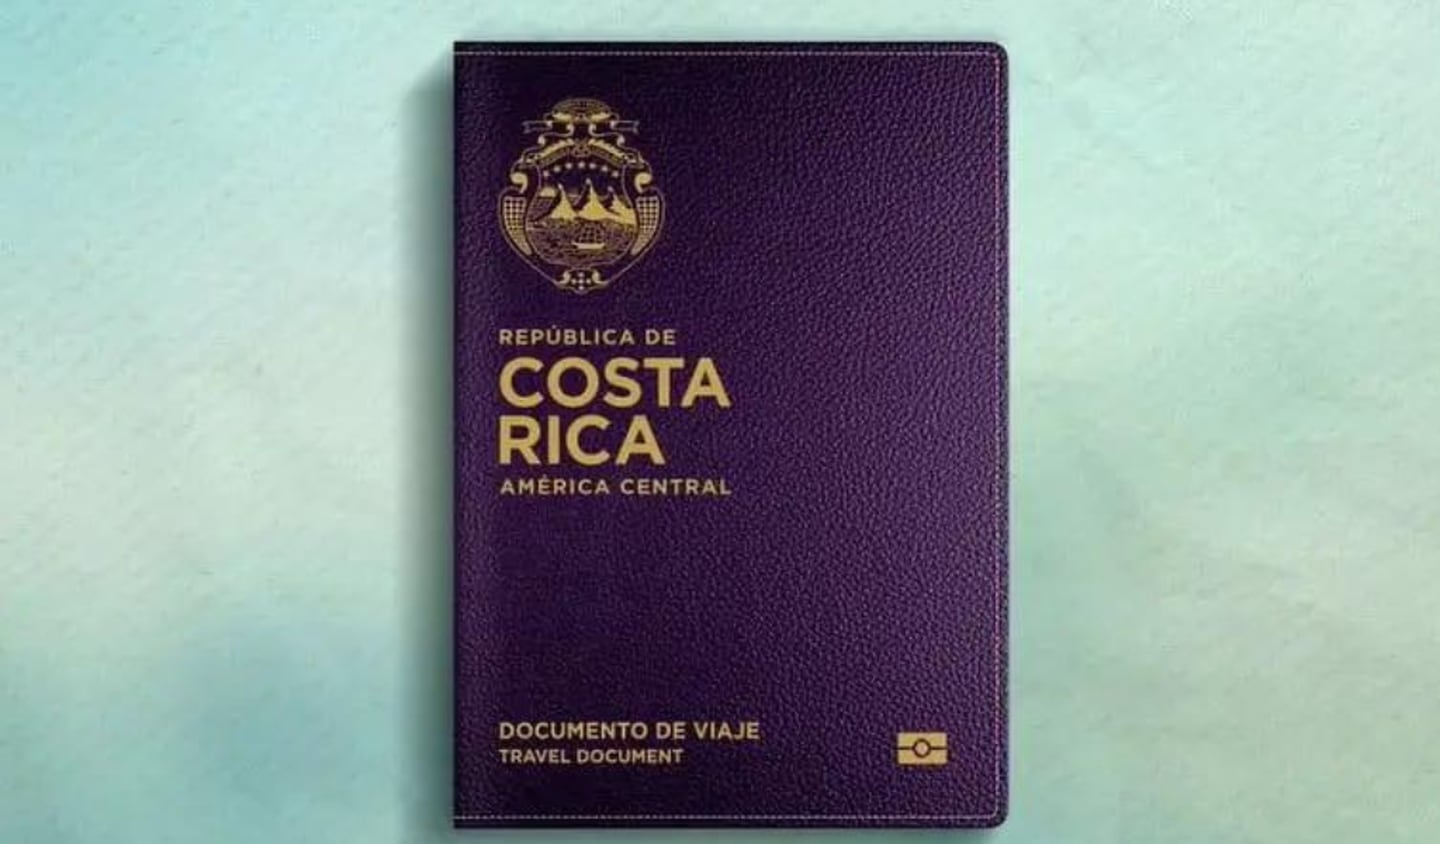 Documento de viaje para refugiados en Costa Rica